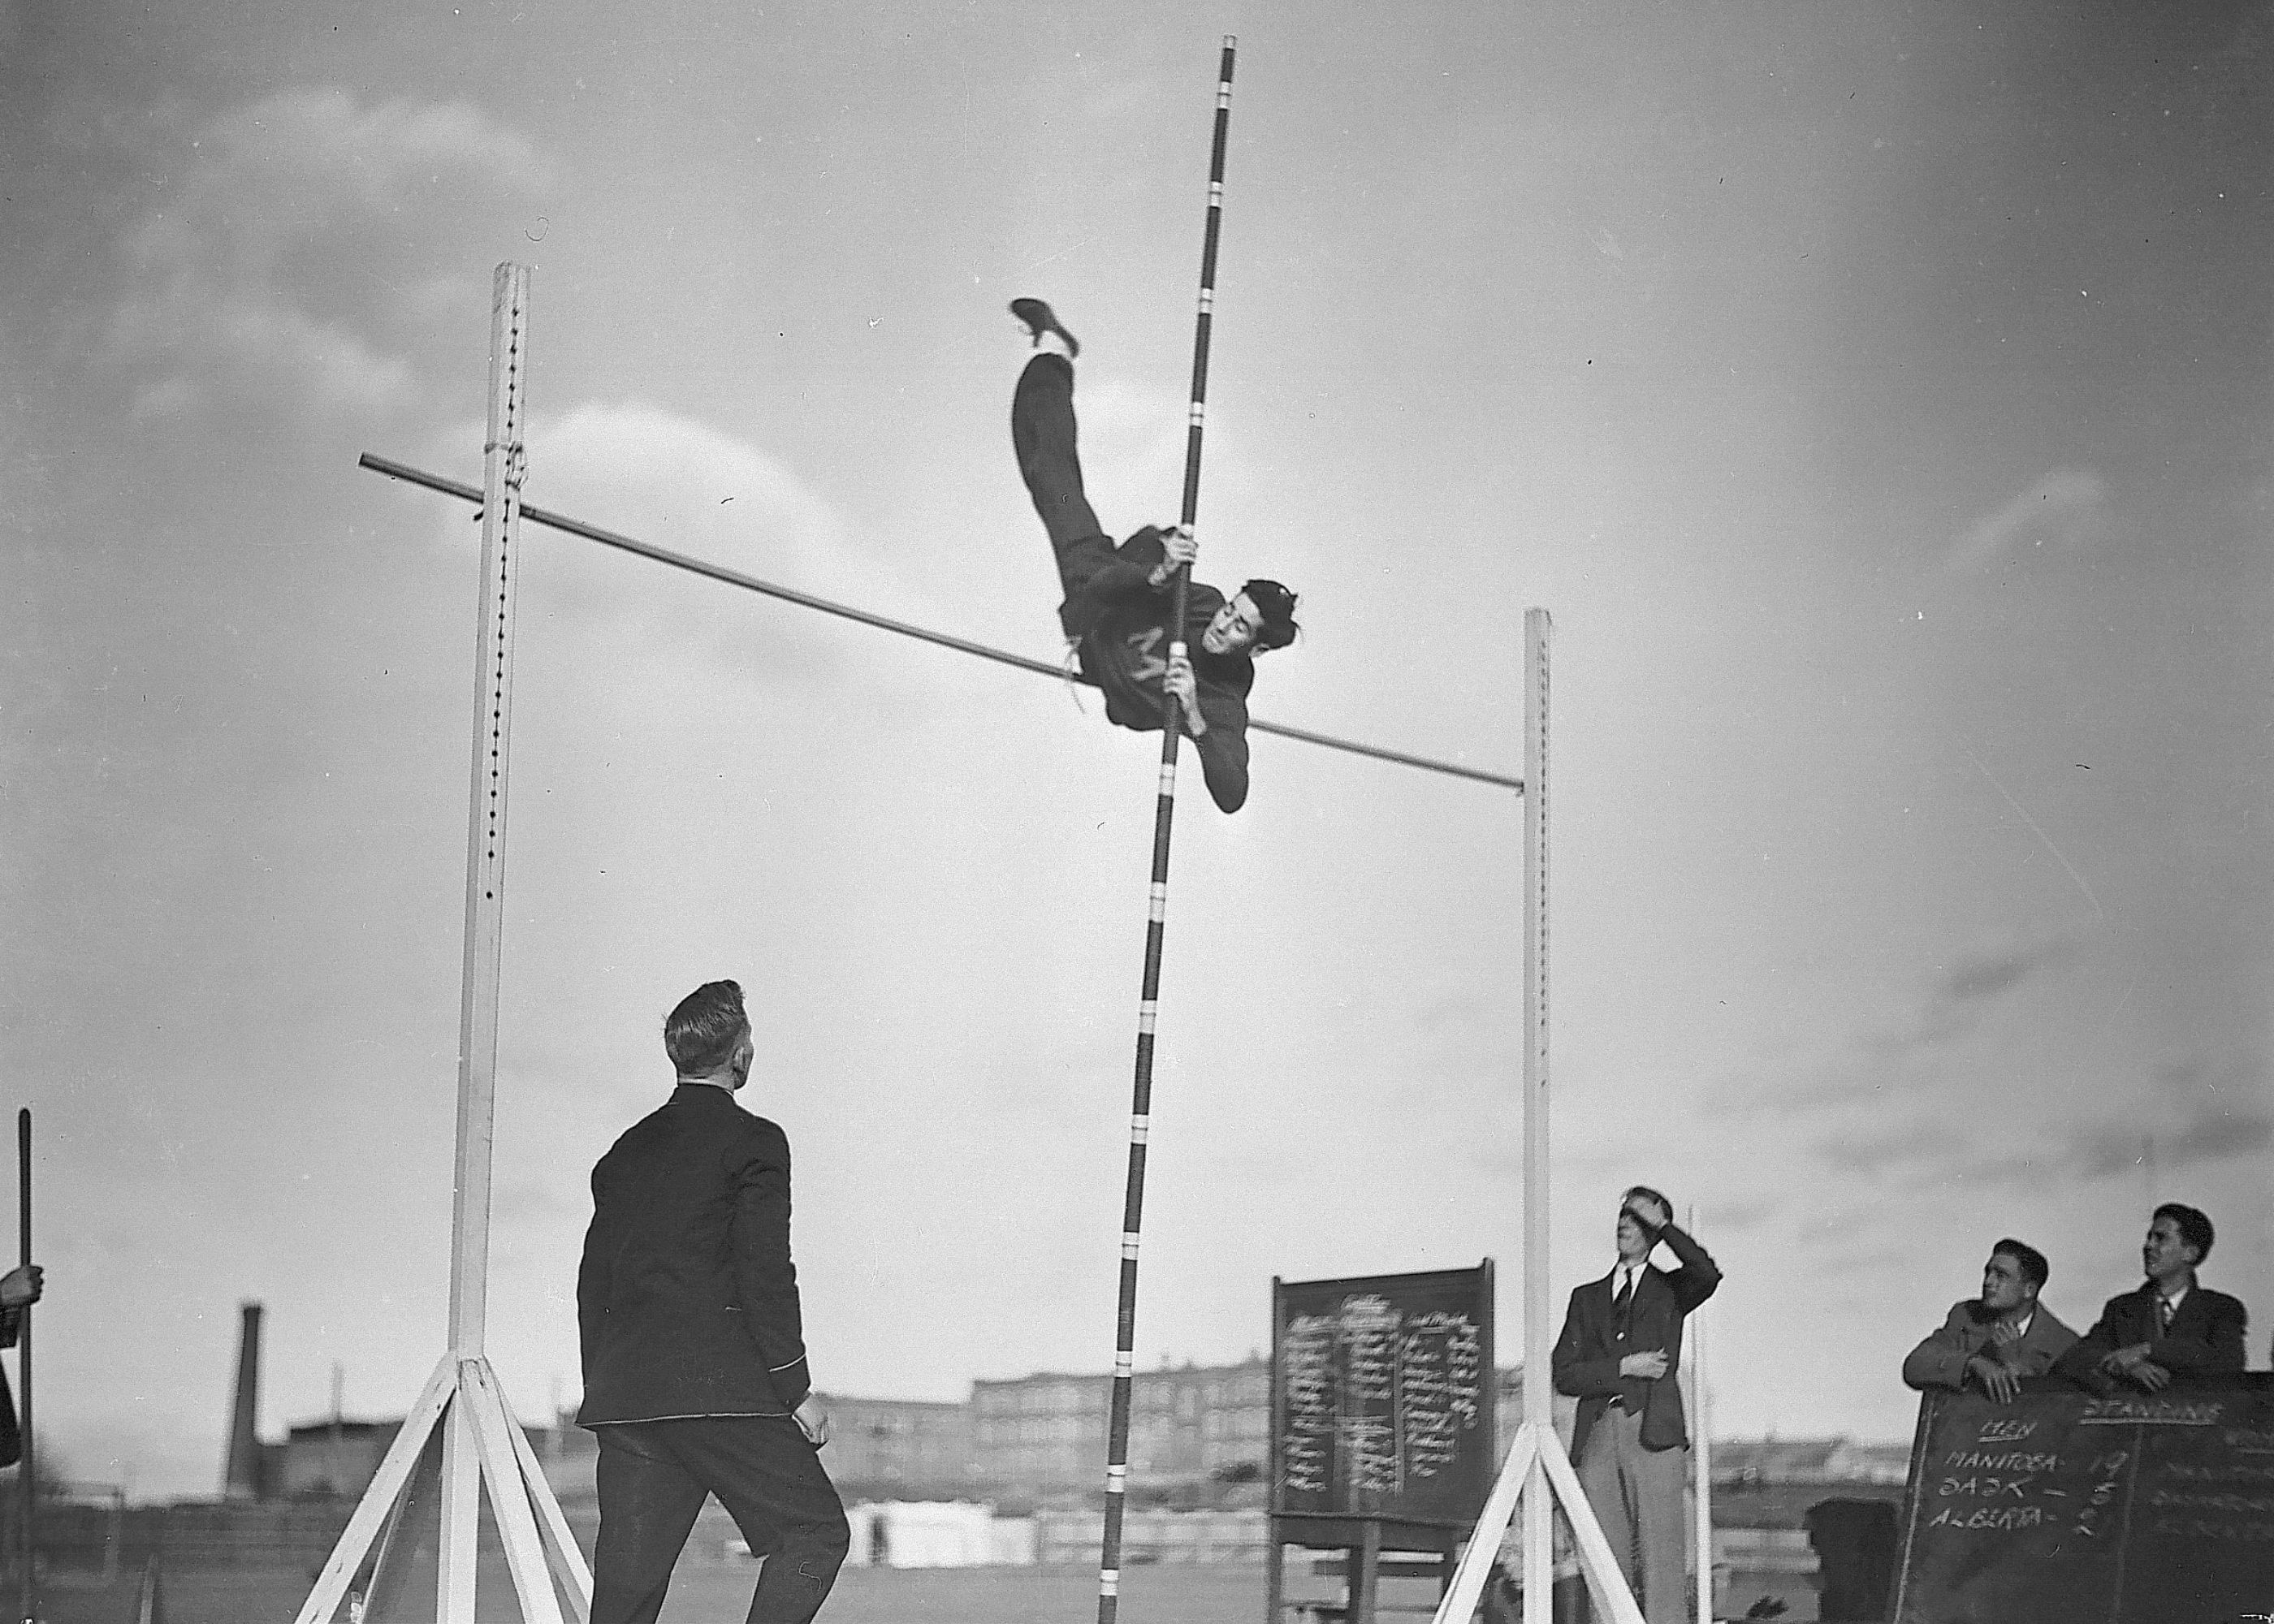 Track meet Pole vault (1935)